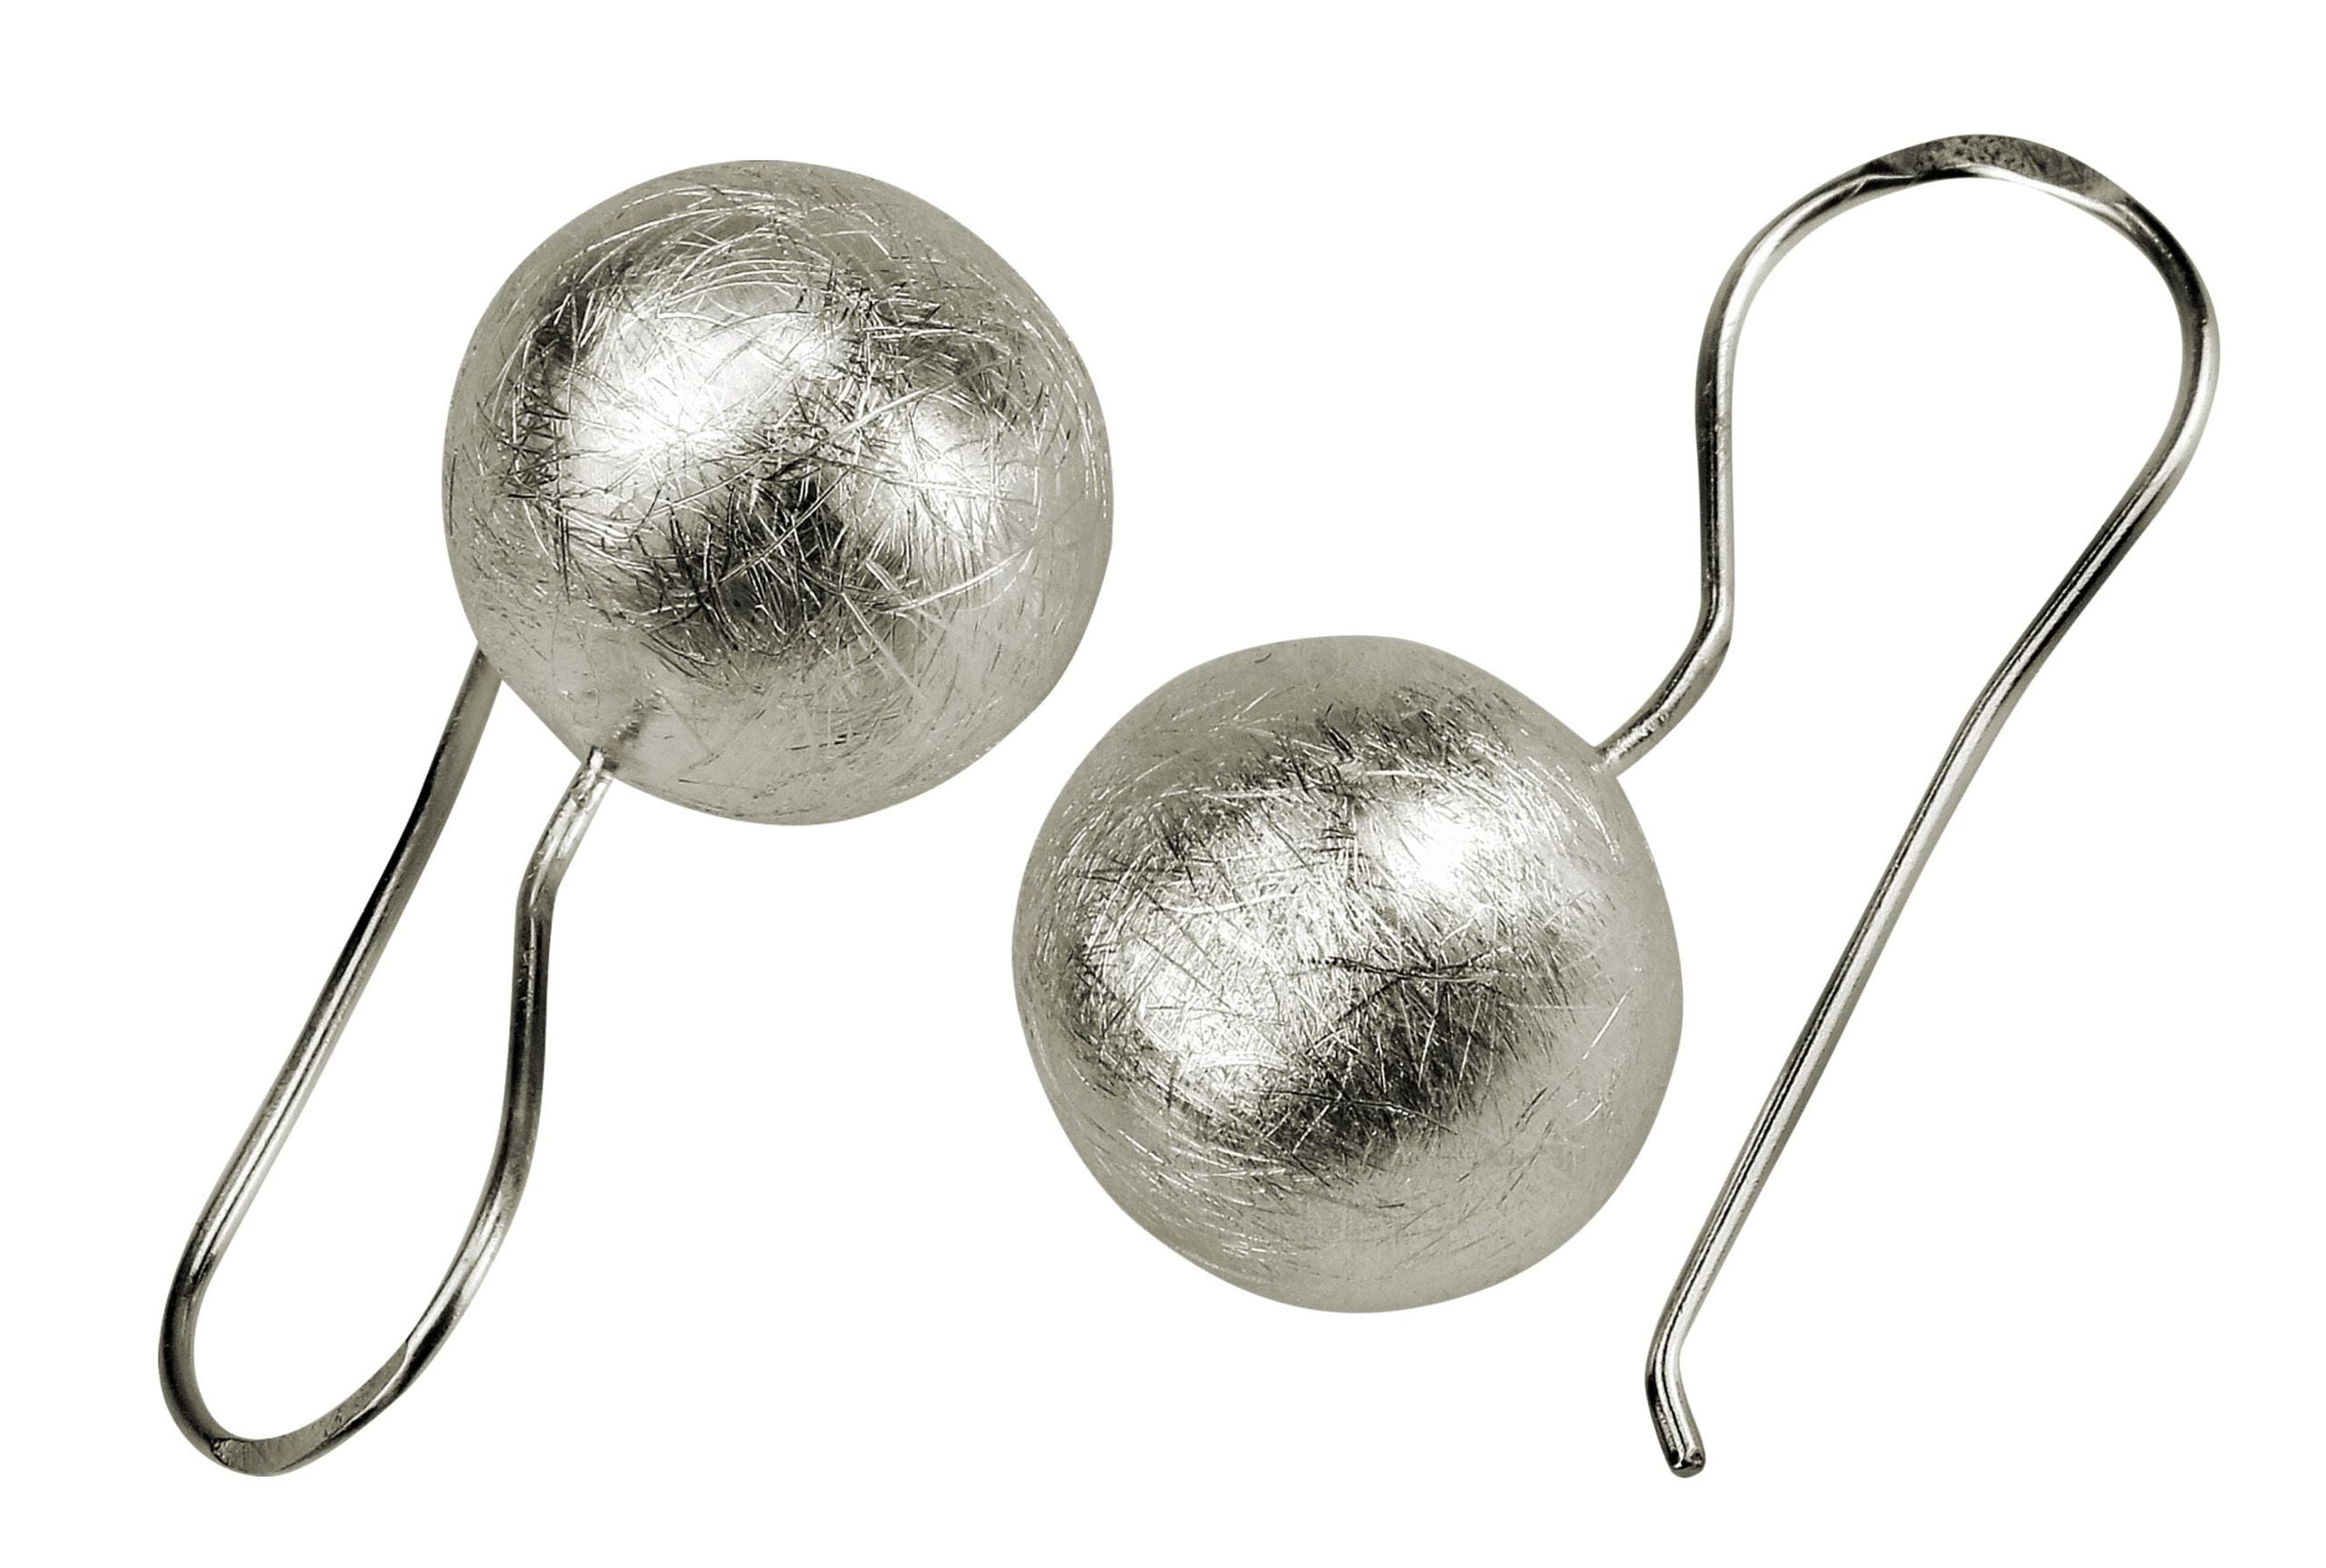 Ohrringe aus Silber für Damen in Form einer am Ohr hängenden Kugel mit gebürsteter Oberfläche.